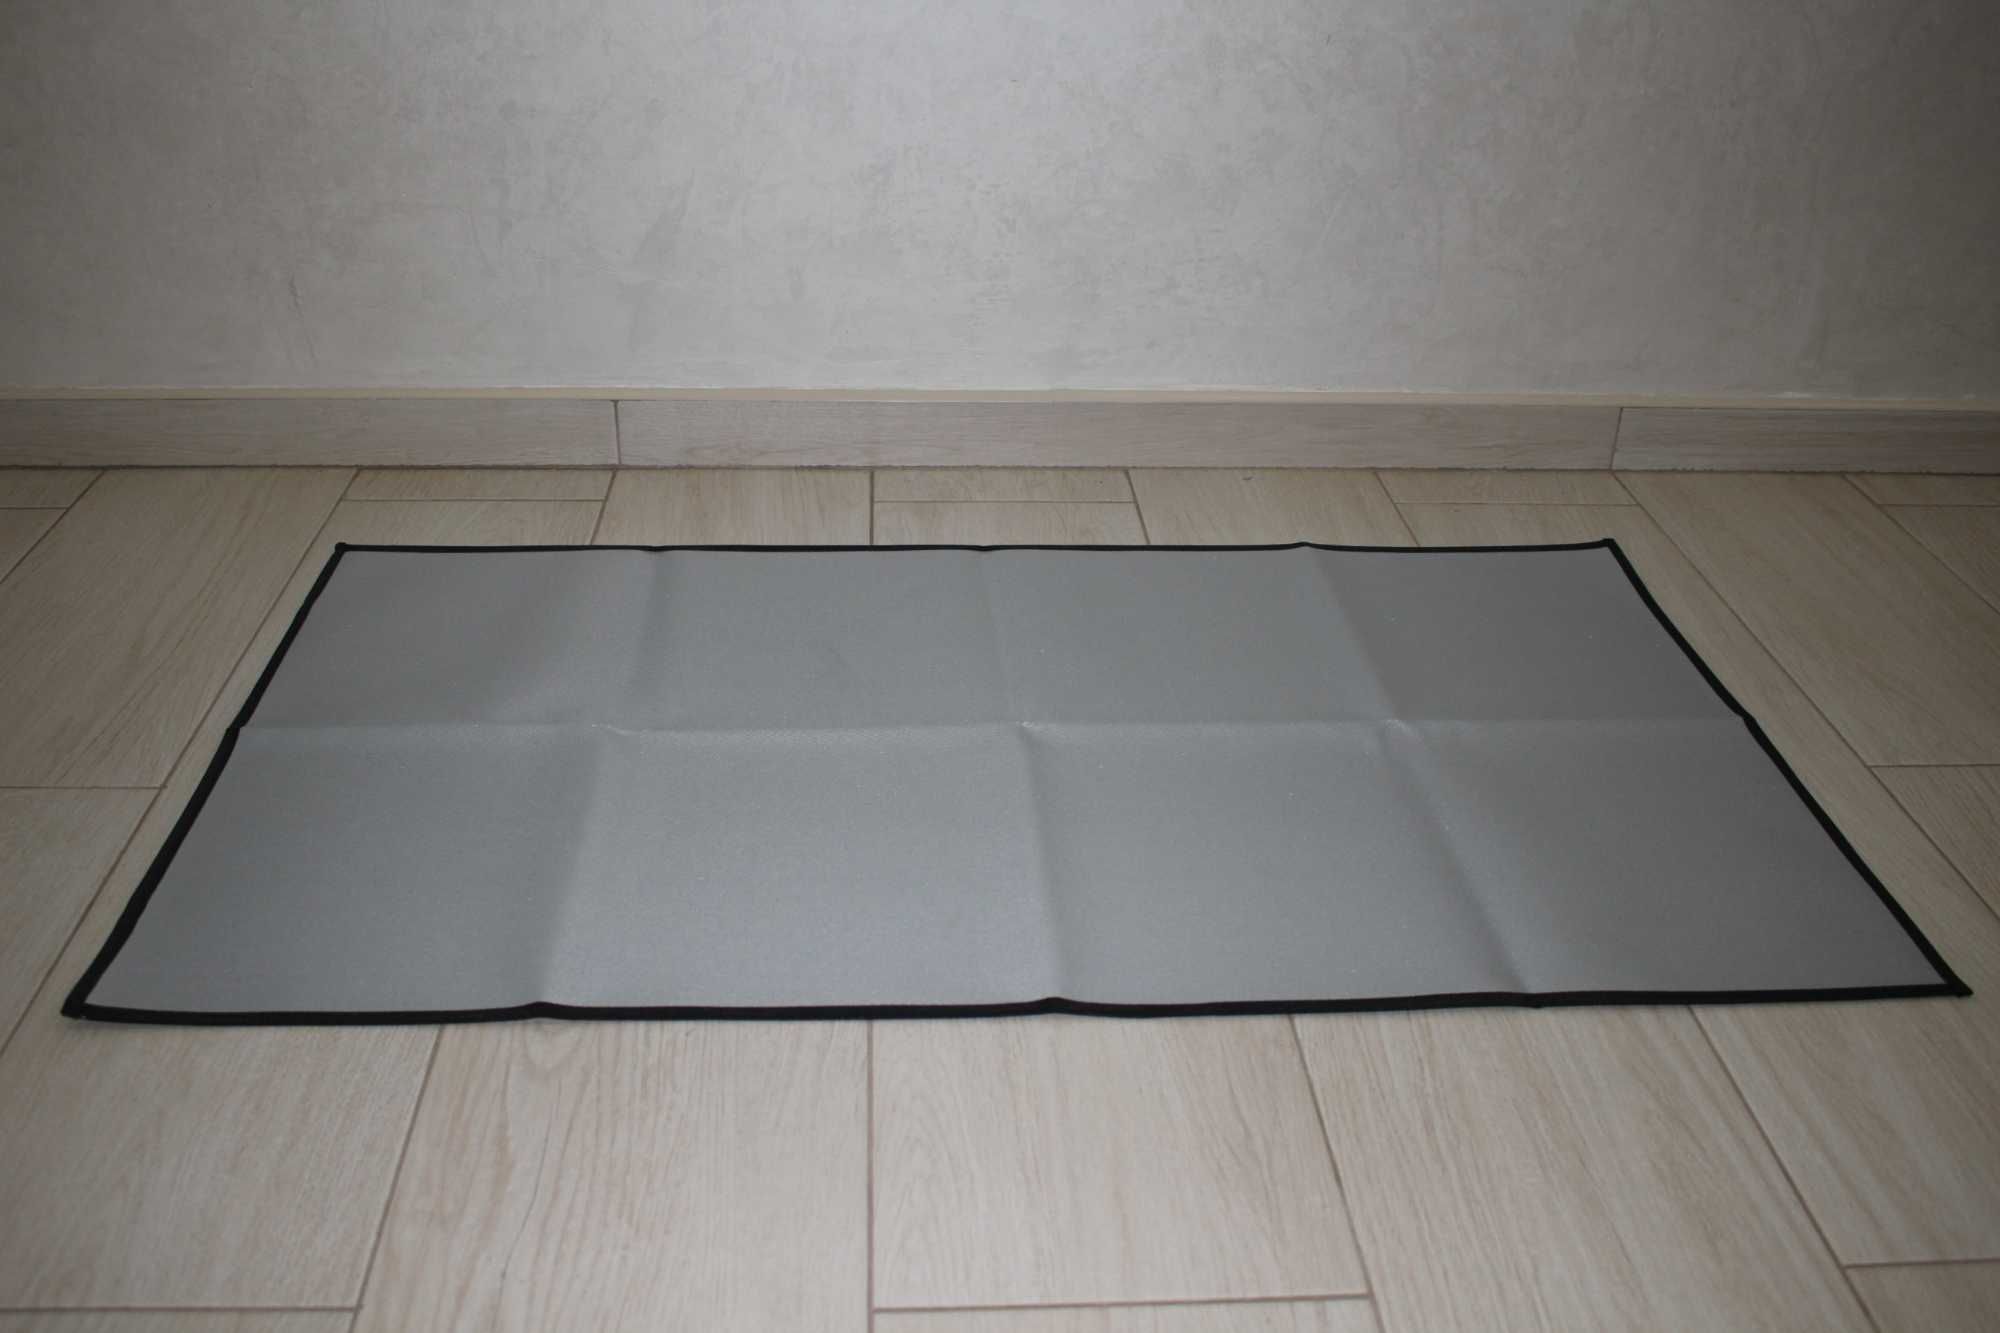 Захисний вогнестійкий килимок під мангал та барбекю 105 x 60 см.